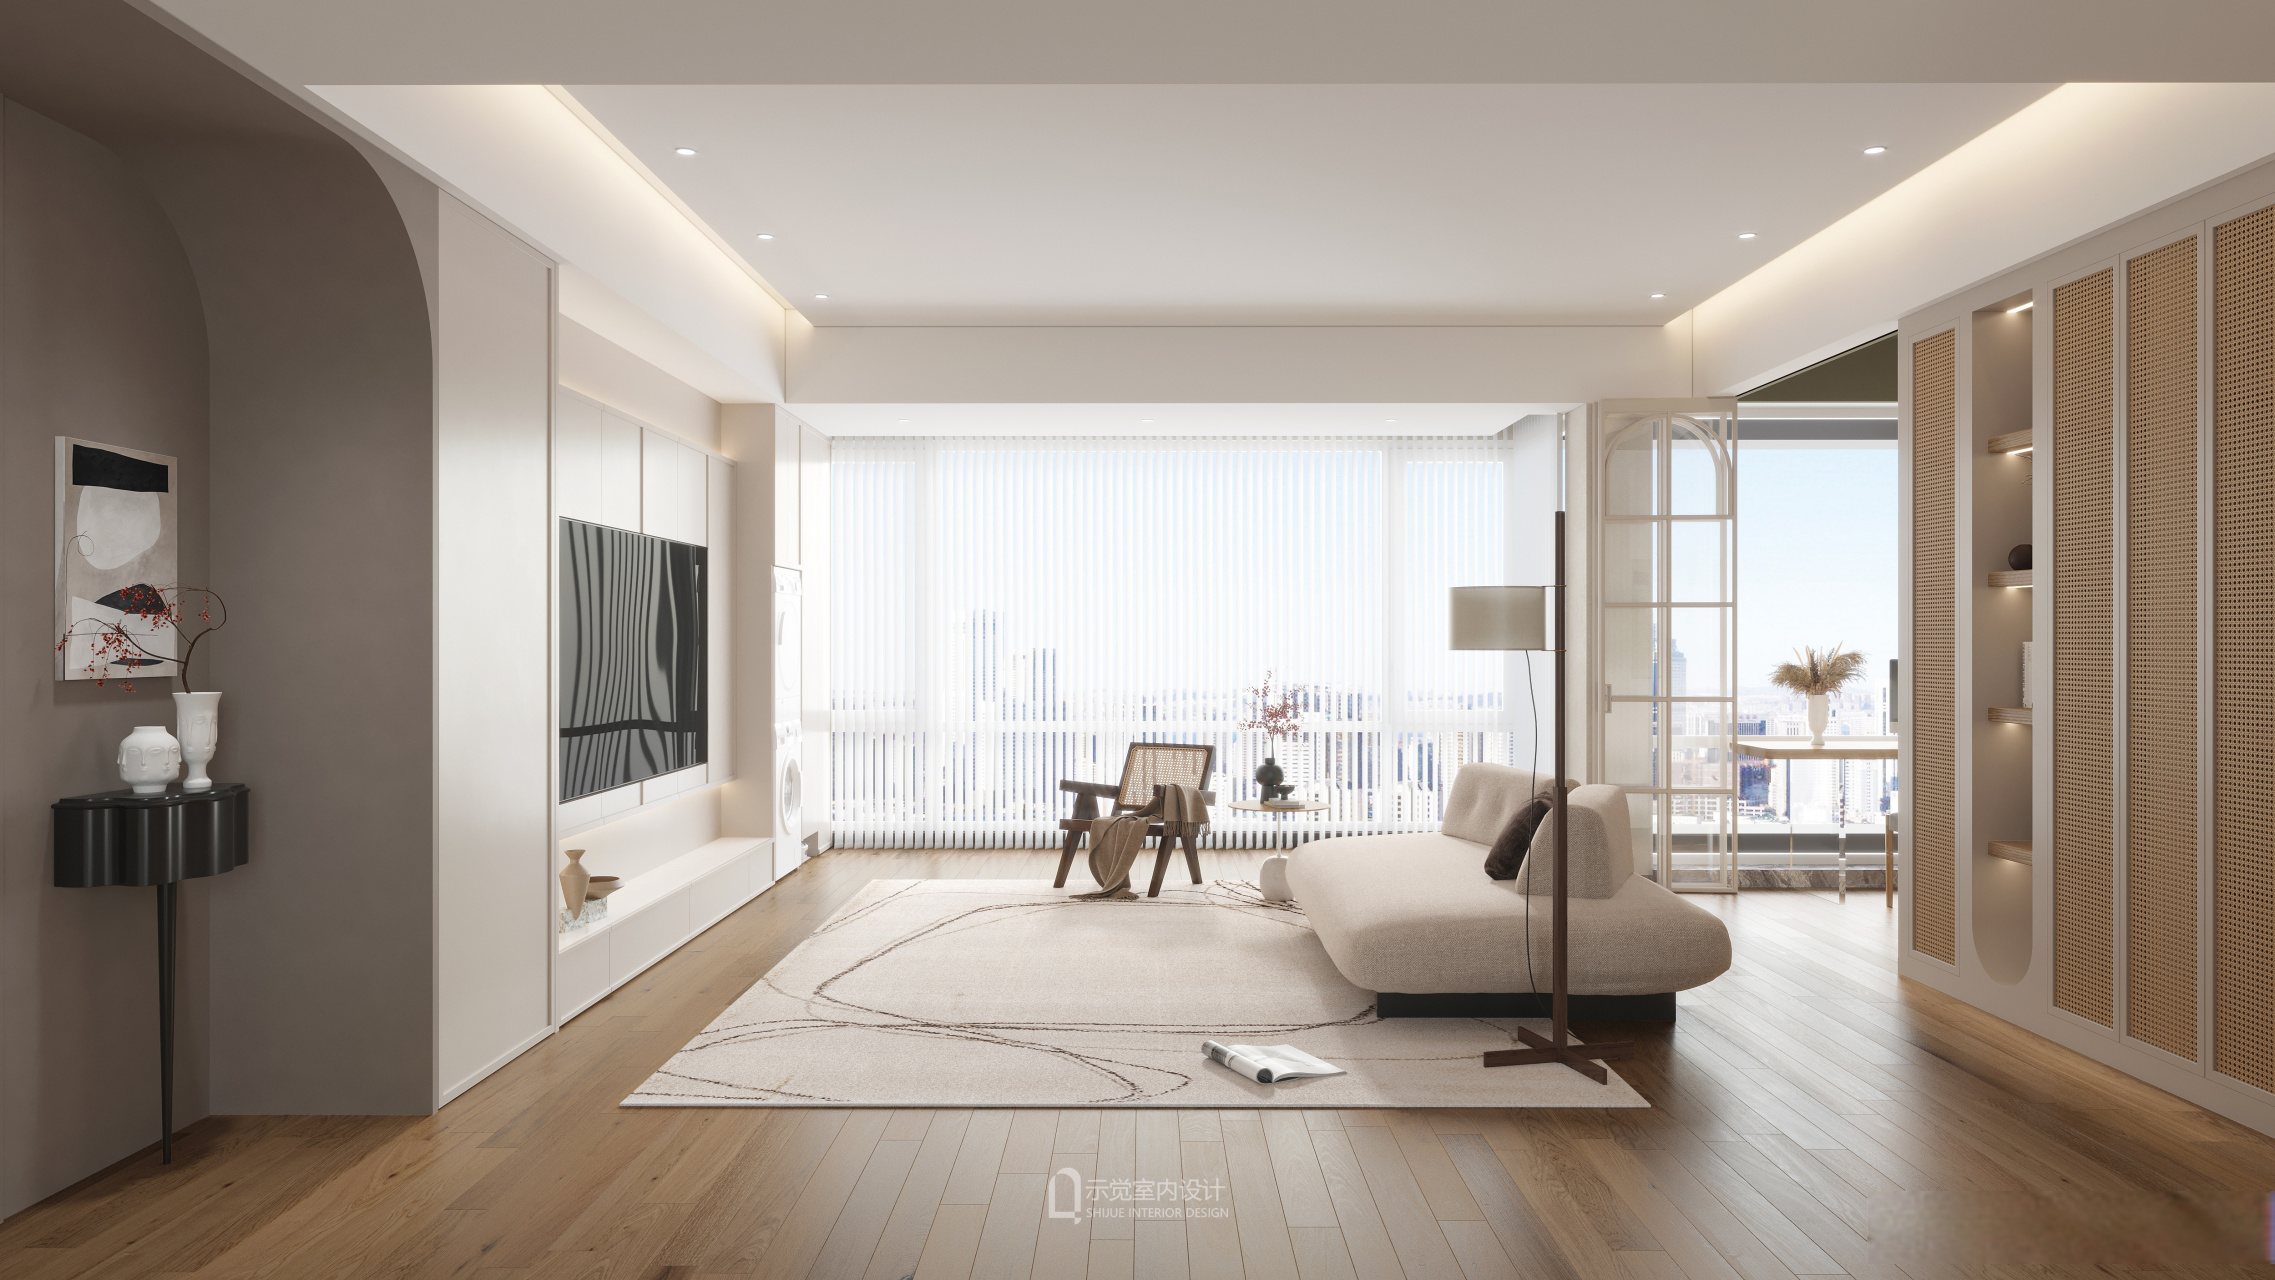 200 ㎡ 碧云尊邸,现代法式客厅设计  客厅大面积的留白搭配现代感软装